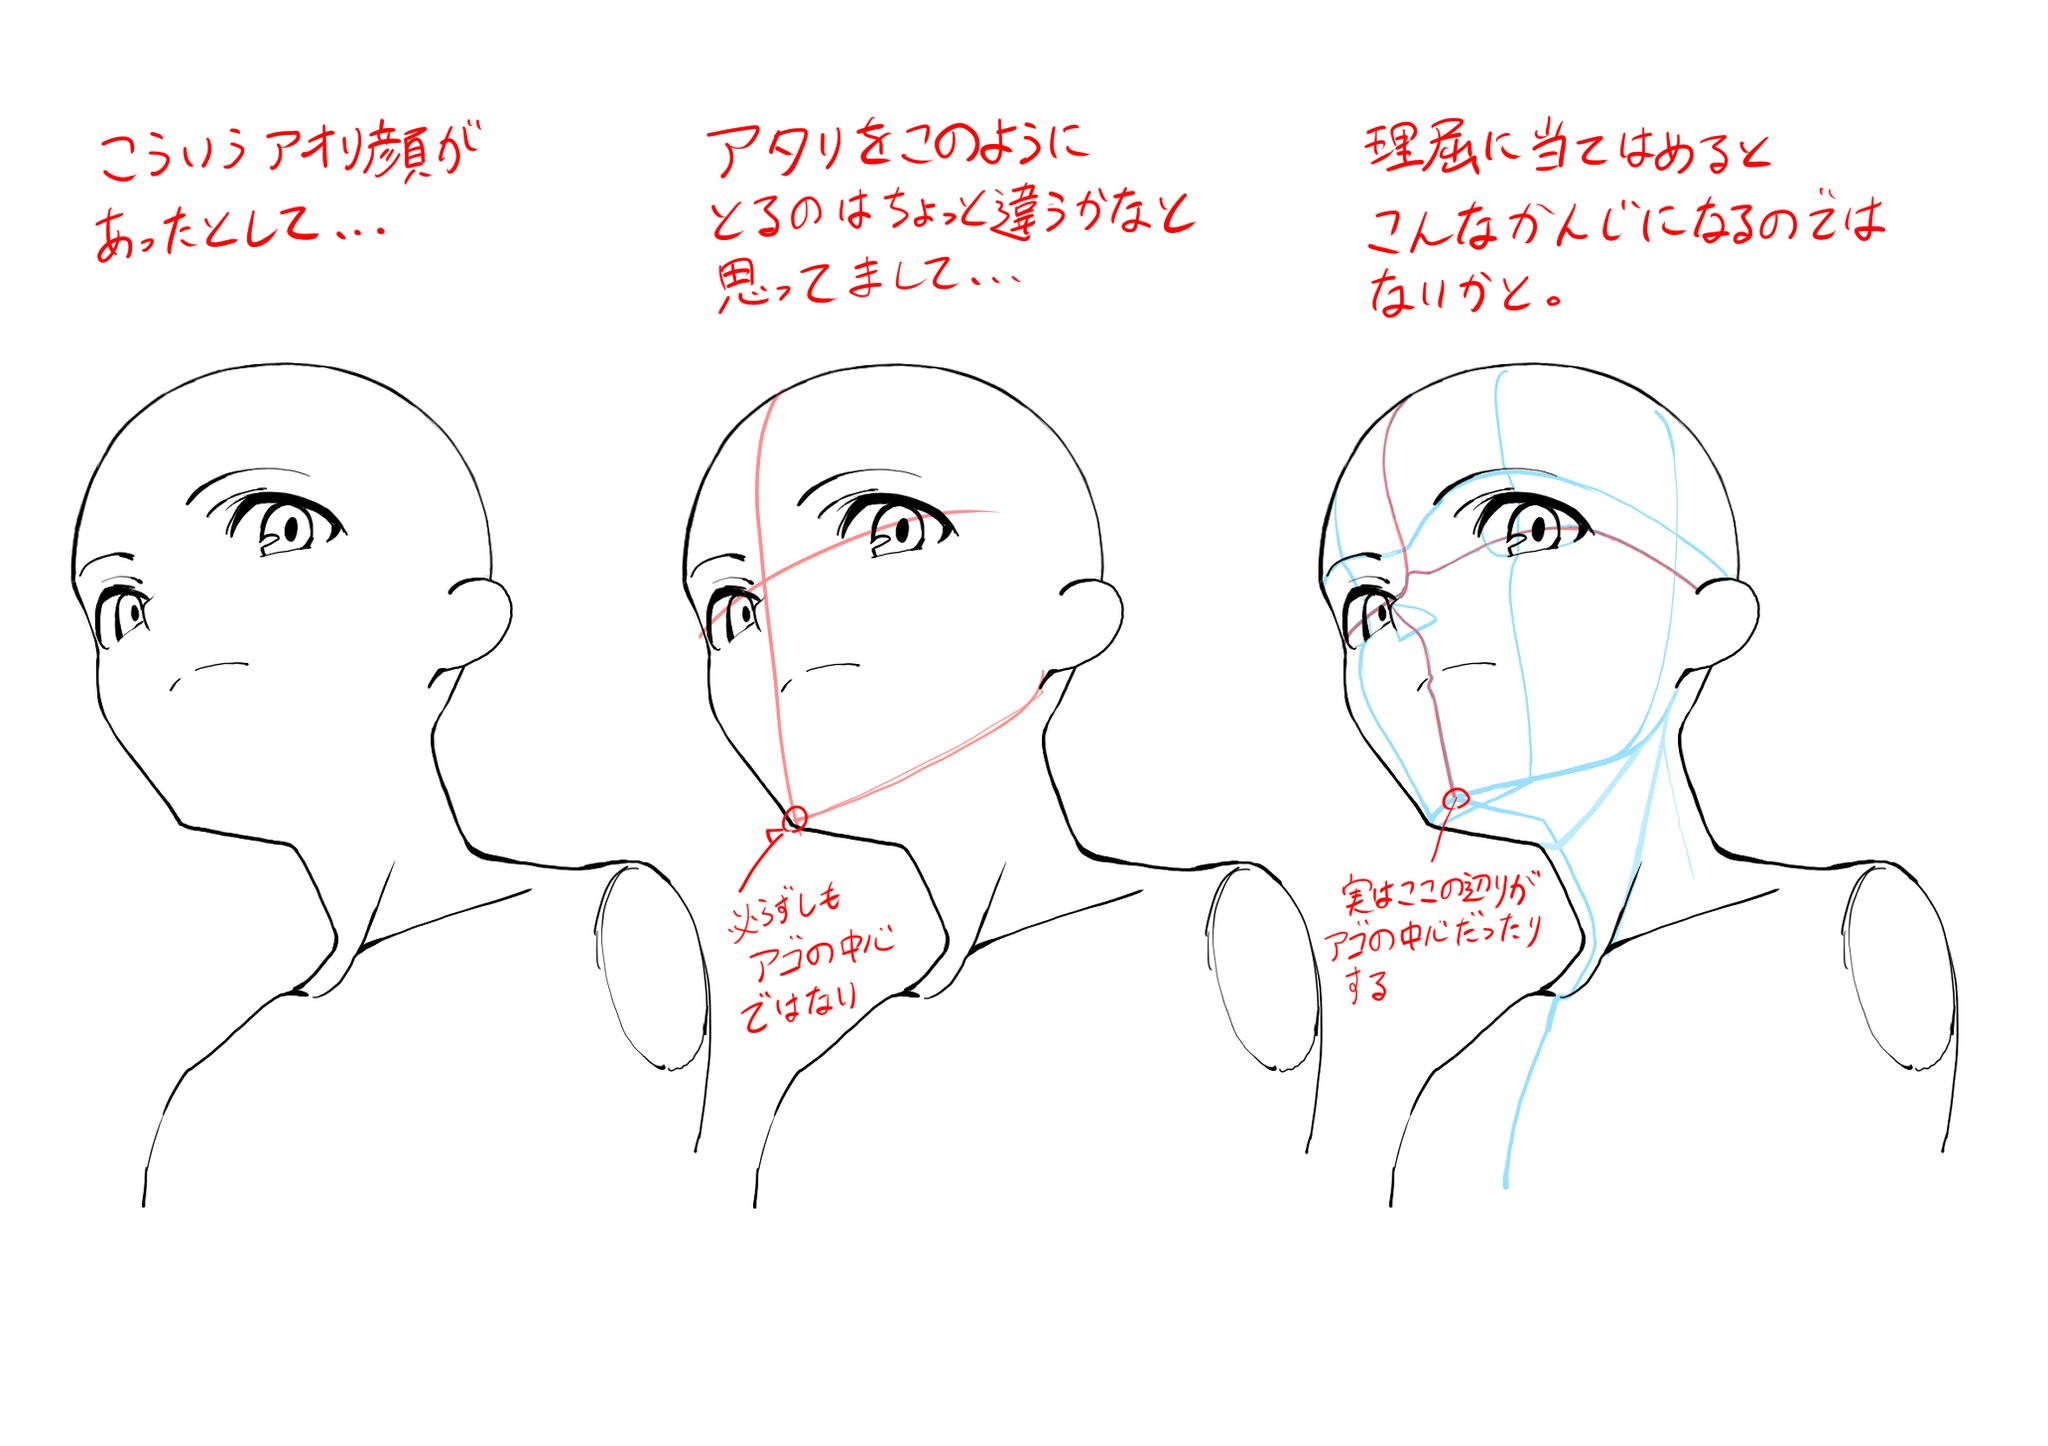 ஜ 夜嵐 Akatsuki Arashi ஜ Rt Atasom 僕が 個人的に アオリの顔を描くときに意識していることを図で描いてみました T Co Waokgowi6j Twitter